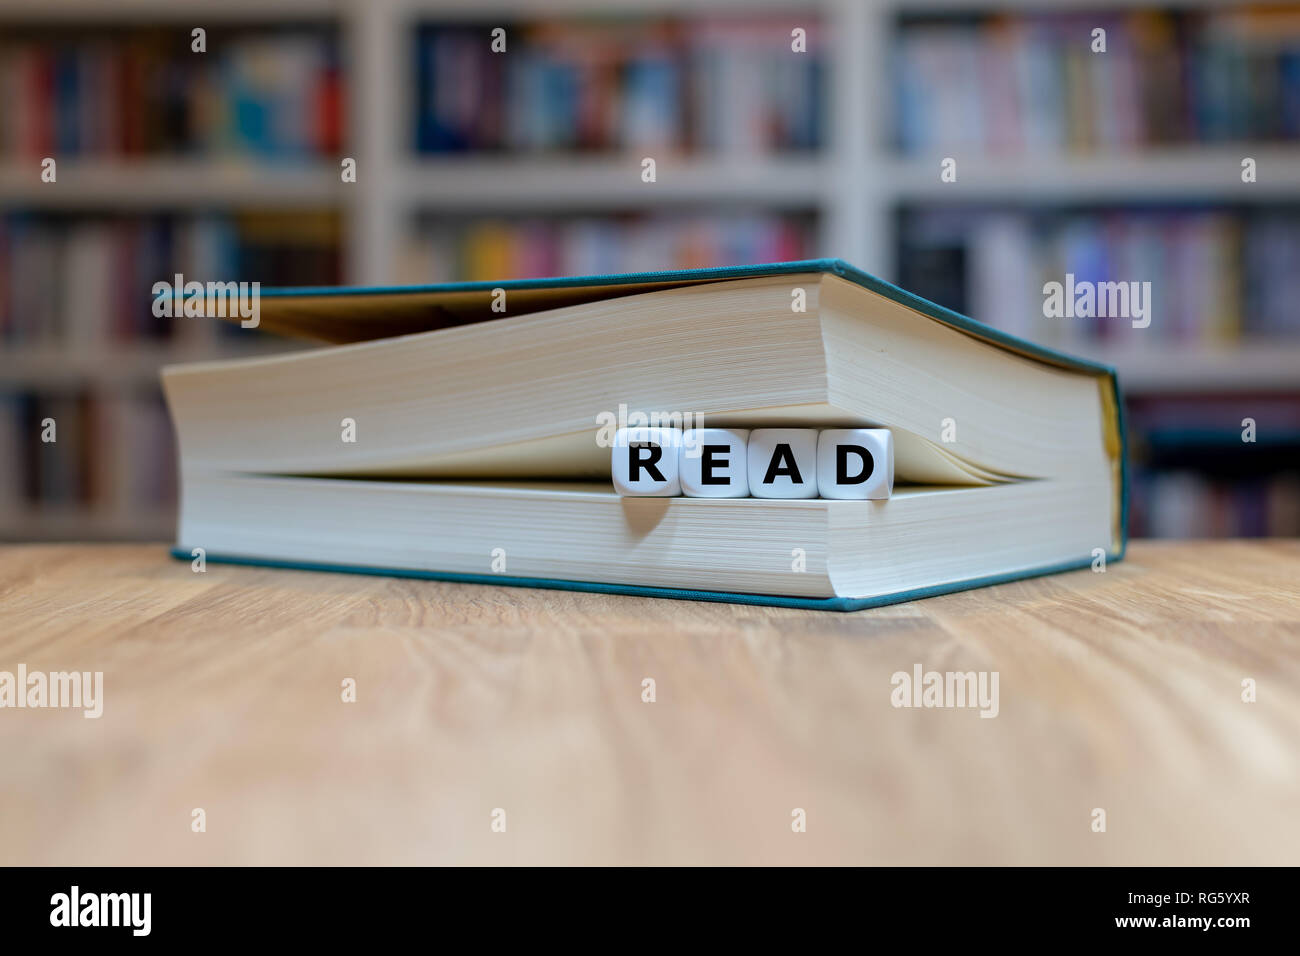 Würfel in Buchform das Wort 'read'. Buch liegt auf einem hölzernen Schreibtisch vor einem Bücherregal. Stockfoto